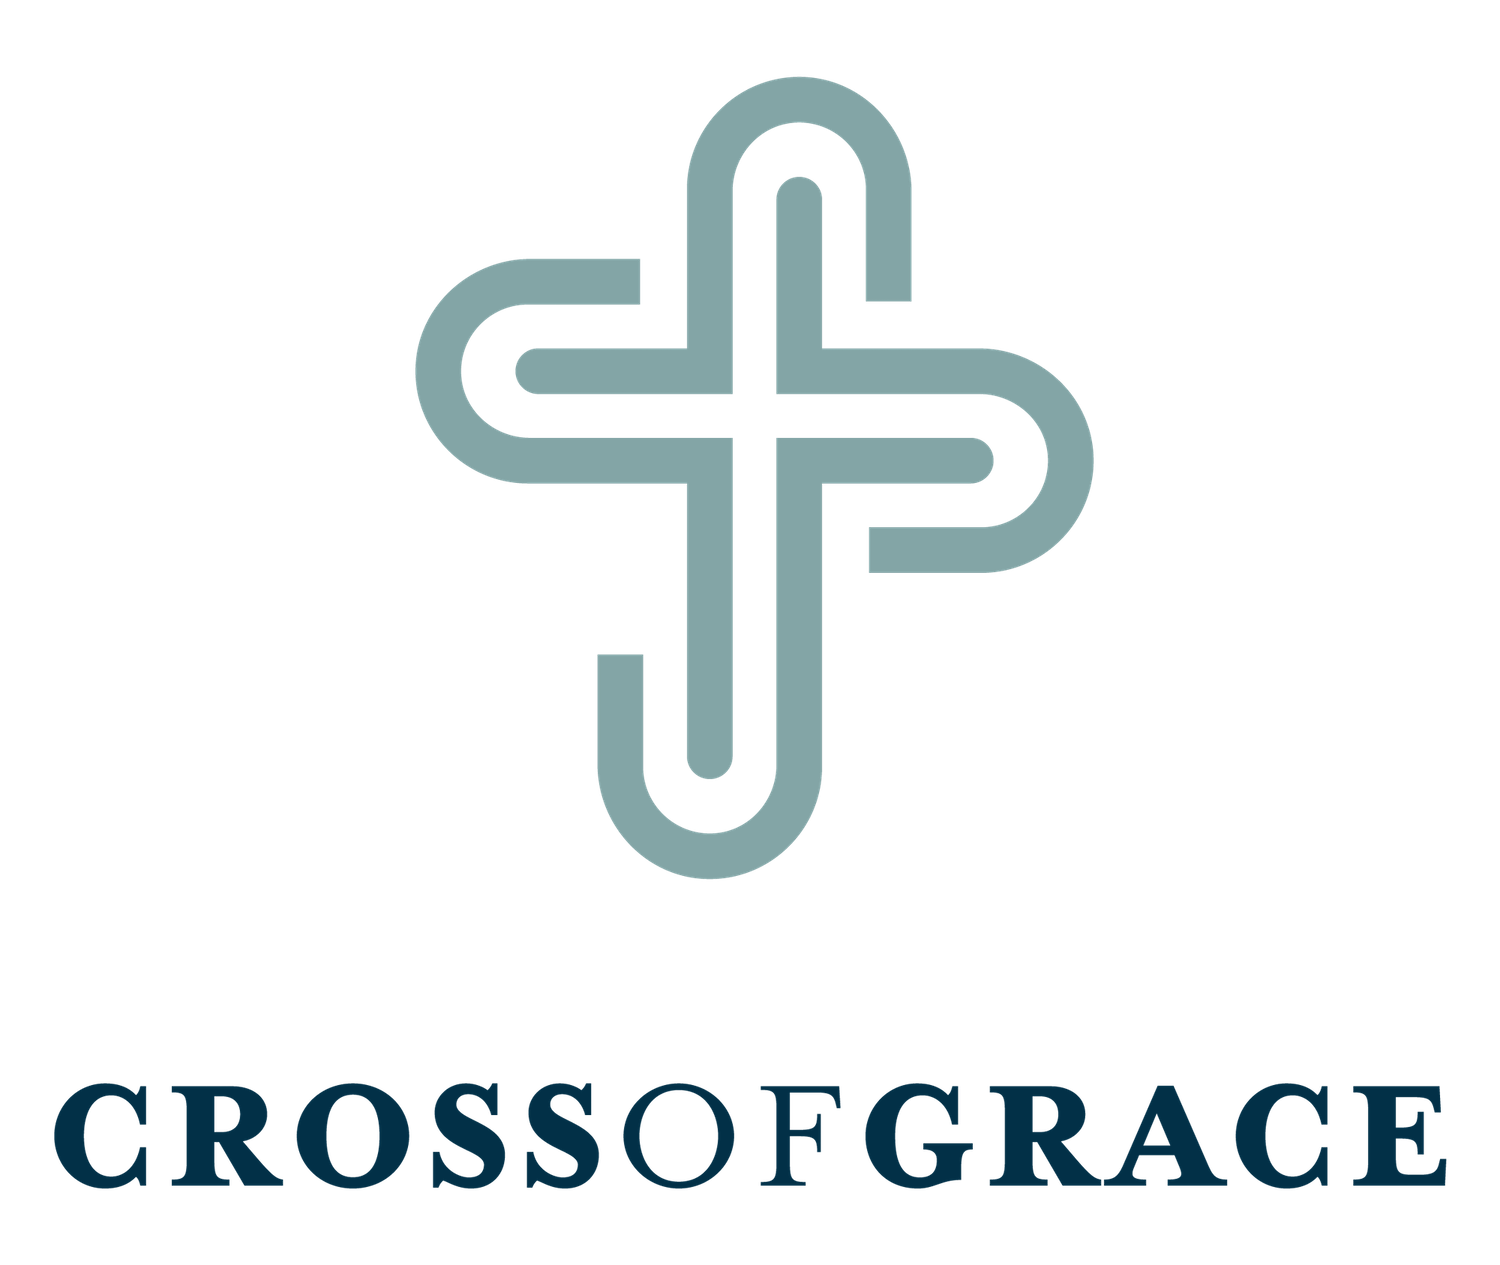 Cross of Grace